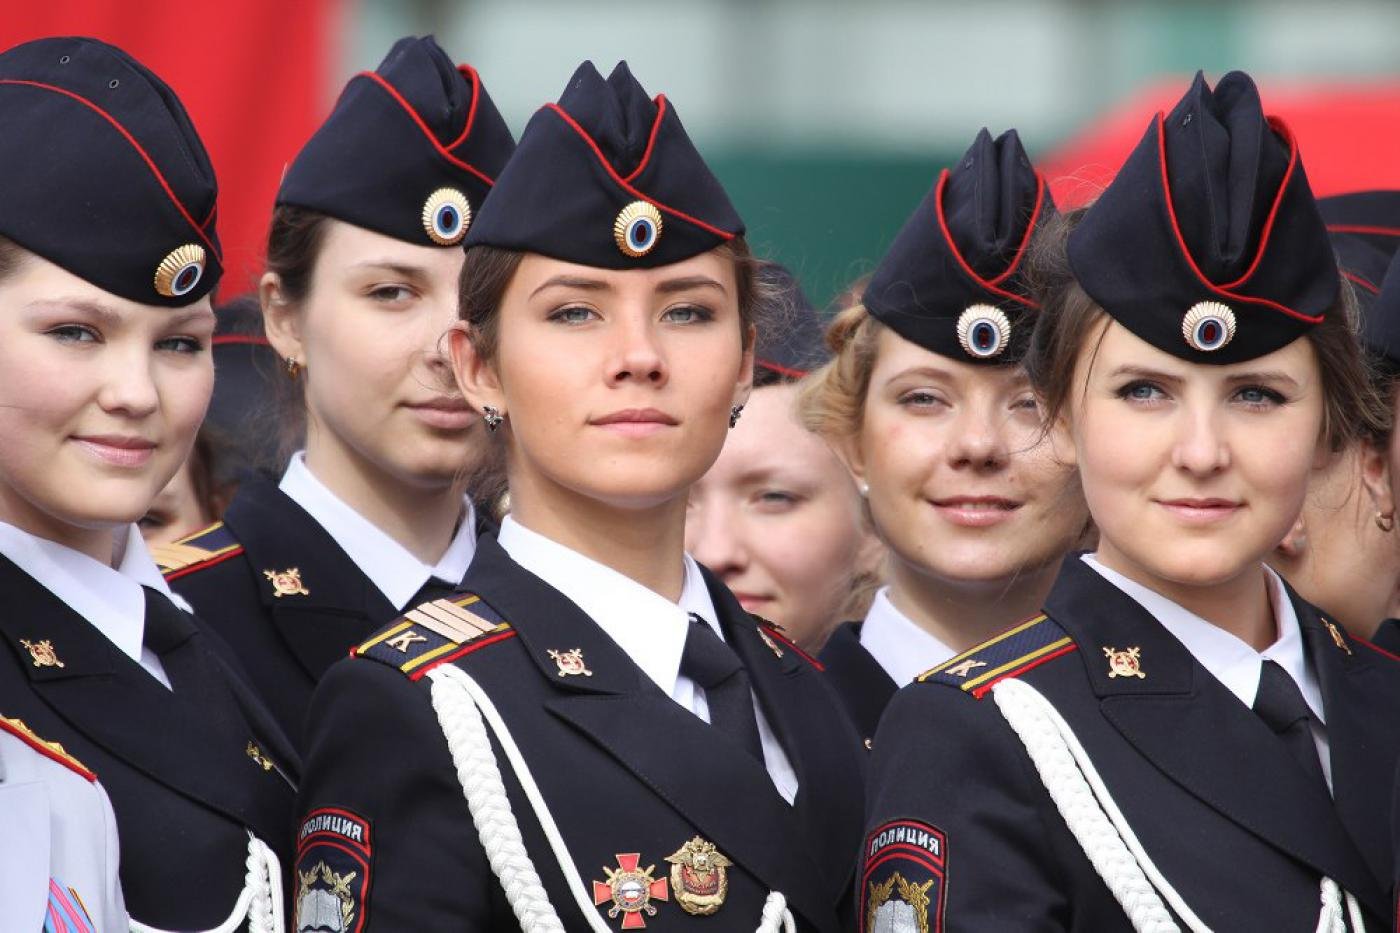 Мвд и т д. Форма полиции России. Парадная форма полиции женская. Форма МВД женская. Парадная форма для женщин в полиции.